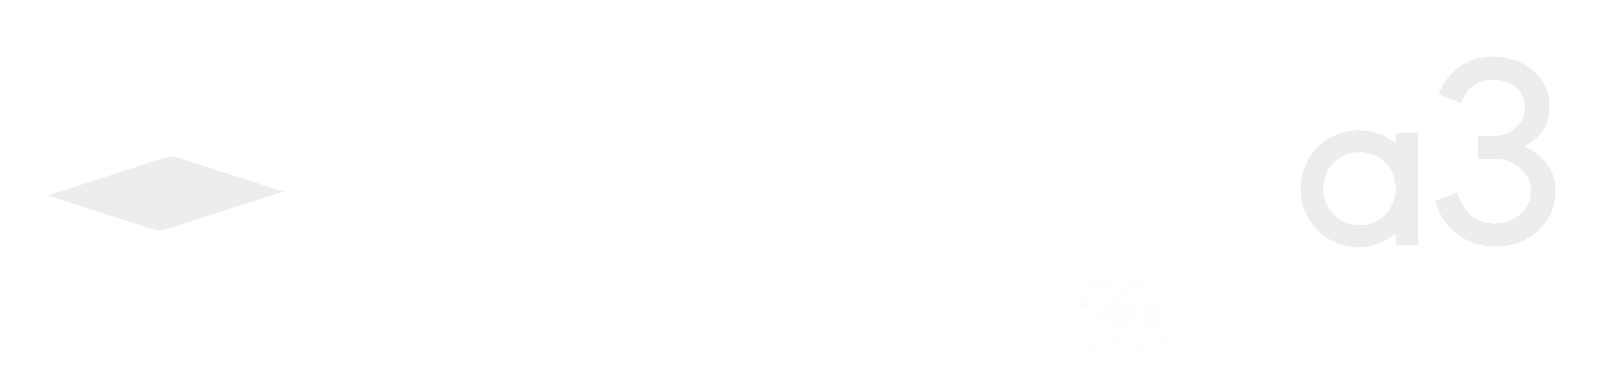 Logo-Softwariza3-Premium-White-HD